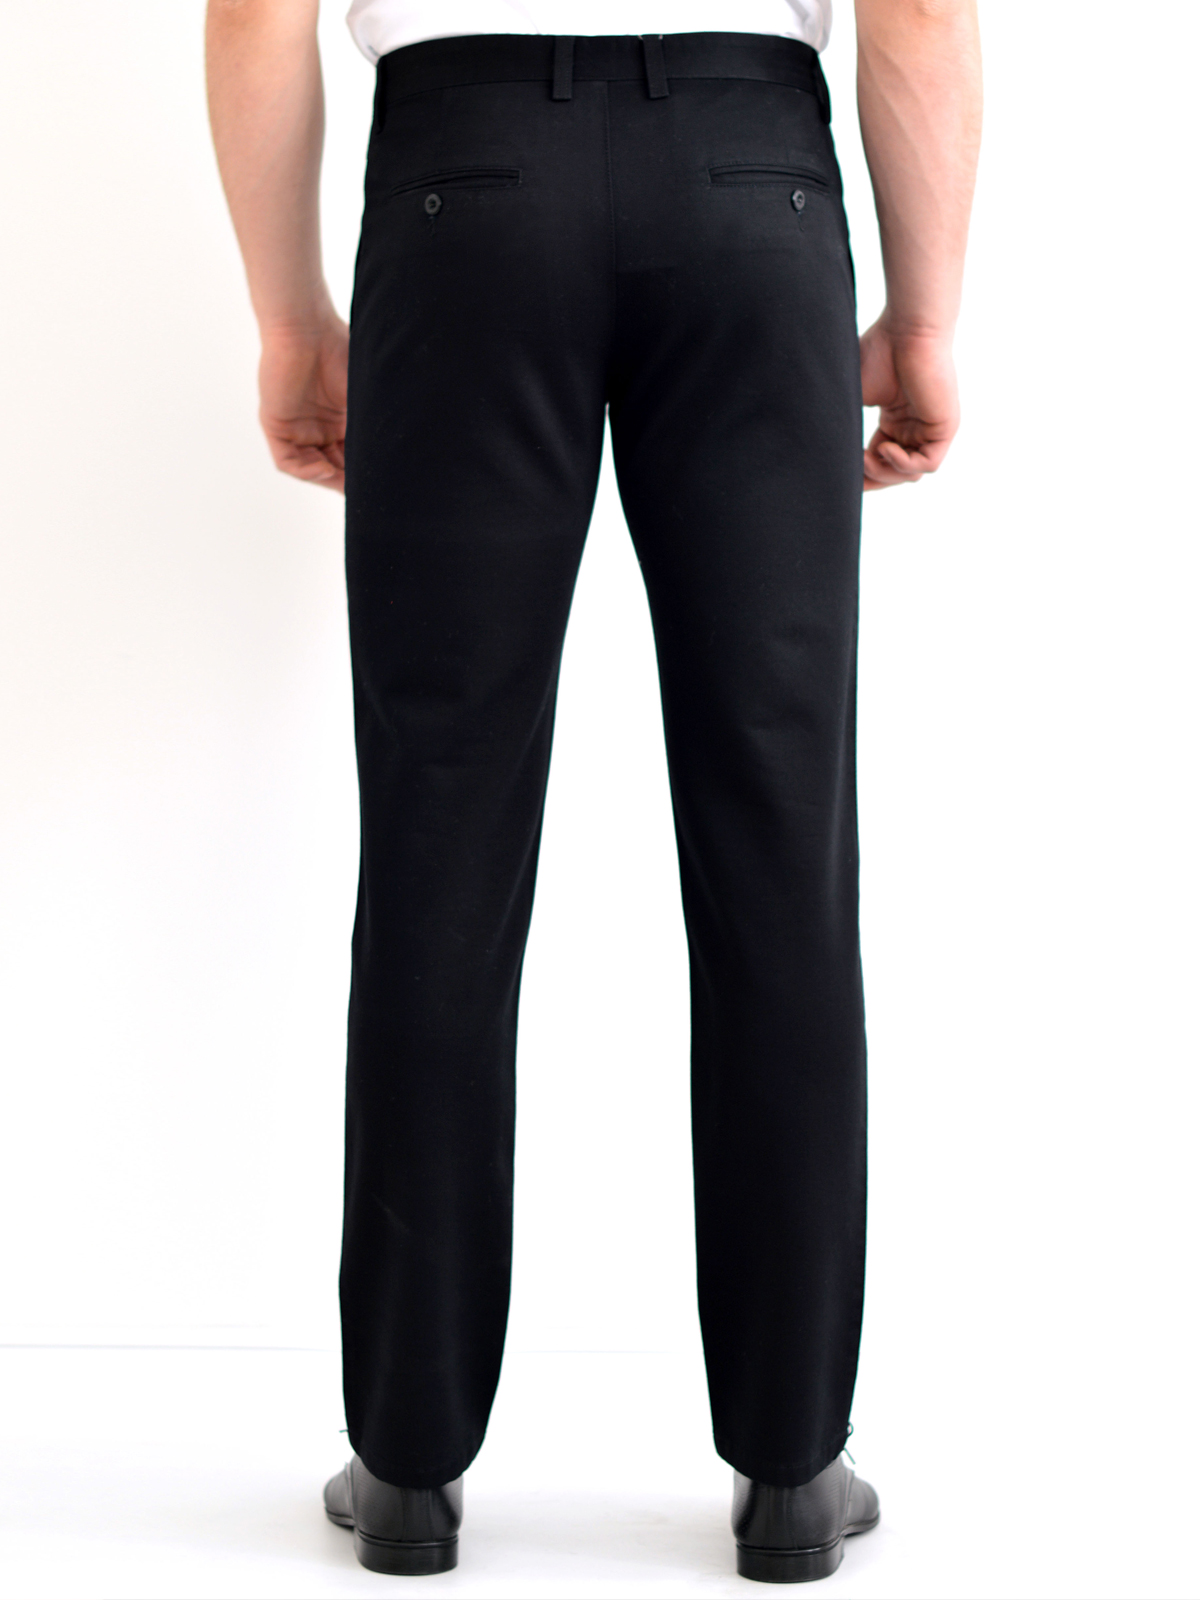 Черен панталон от памук и еластан - 60172 20.00 лв img2